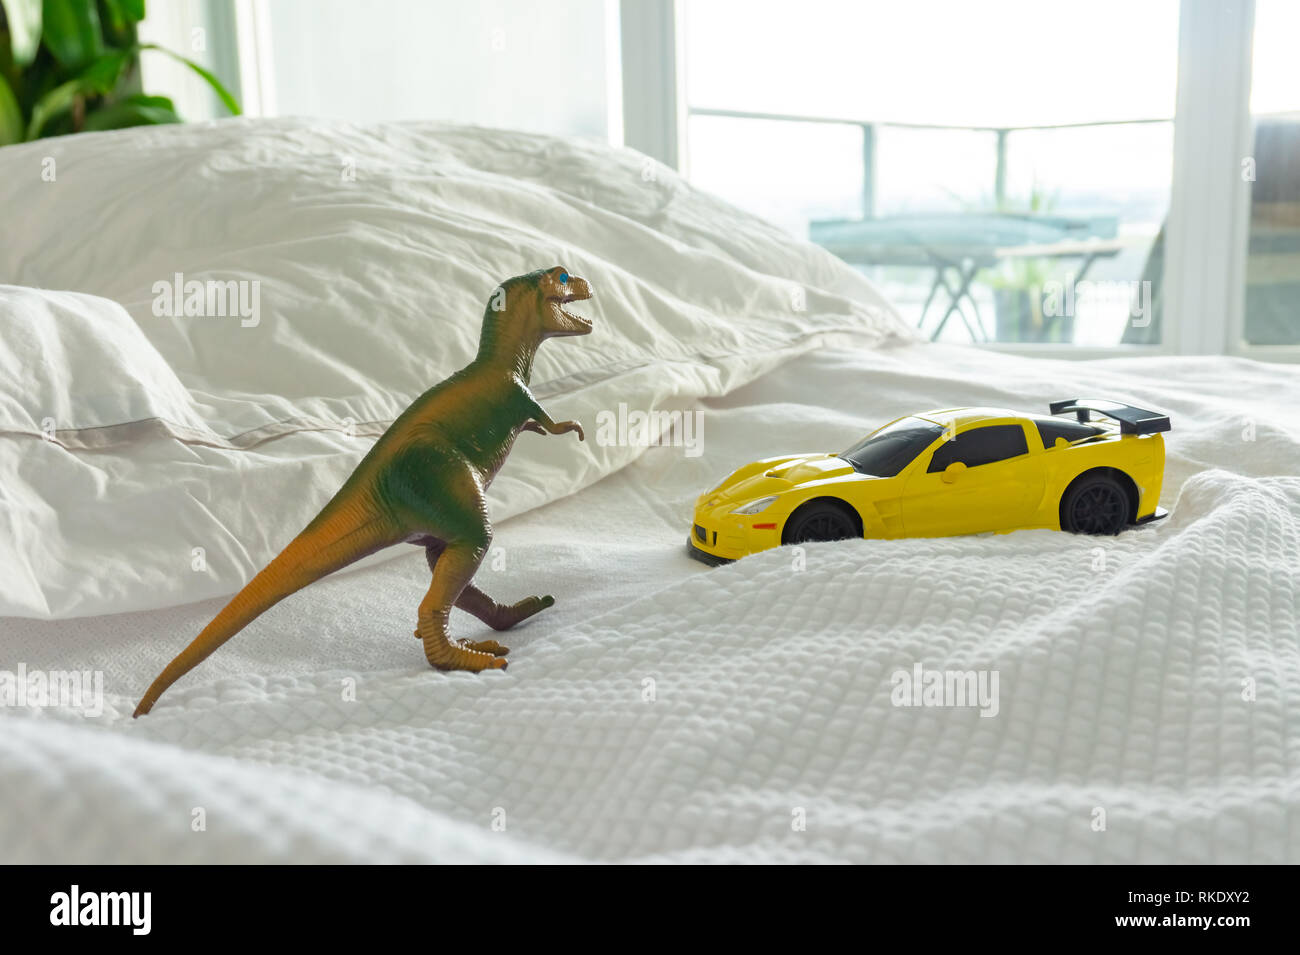 Dinosaurio de juguete y coche en la cama con sus padres, representando el hogar familiar y la crianza de la vida. Sábanas blancas en el fondo. Foto de stock